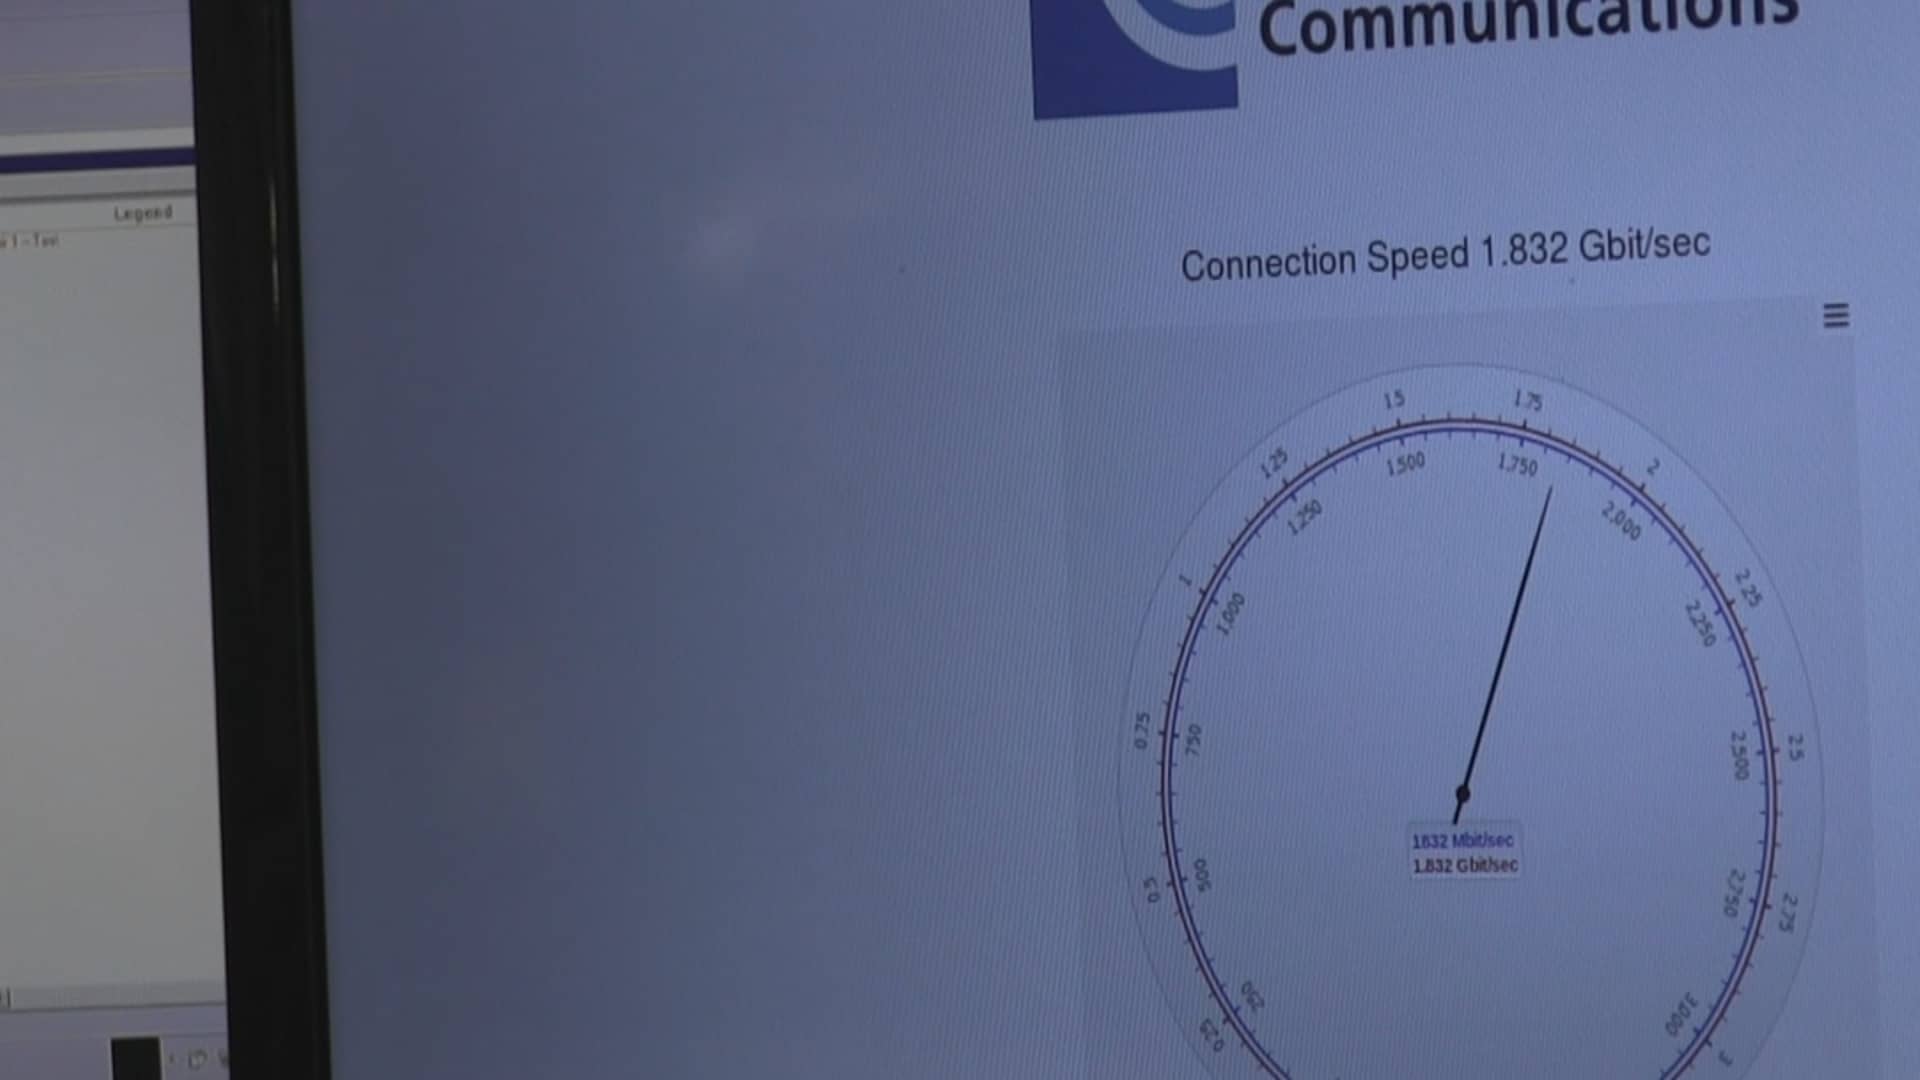 WiFi Bonding Demonstrates Gigabit+ Speeds